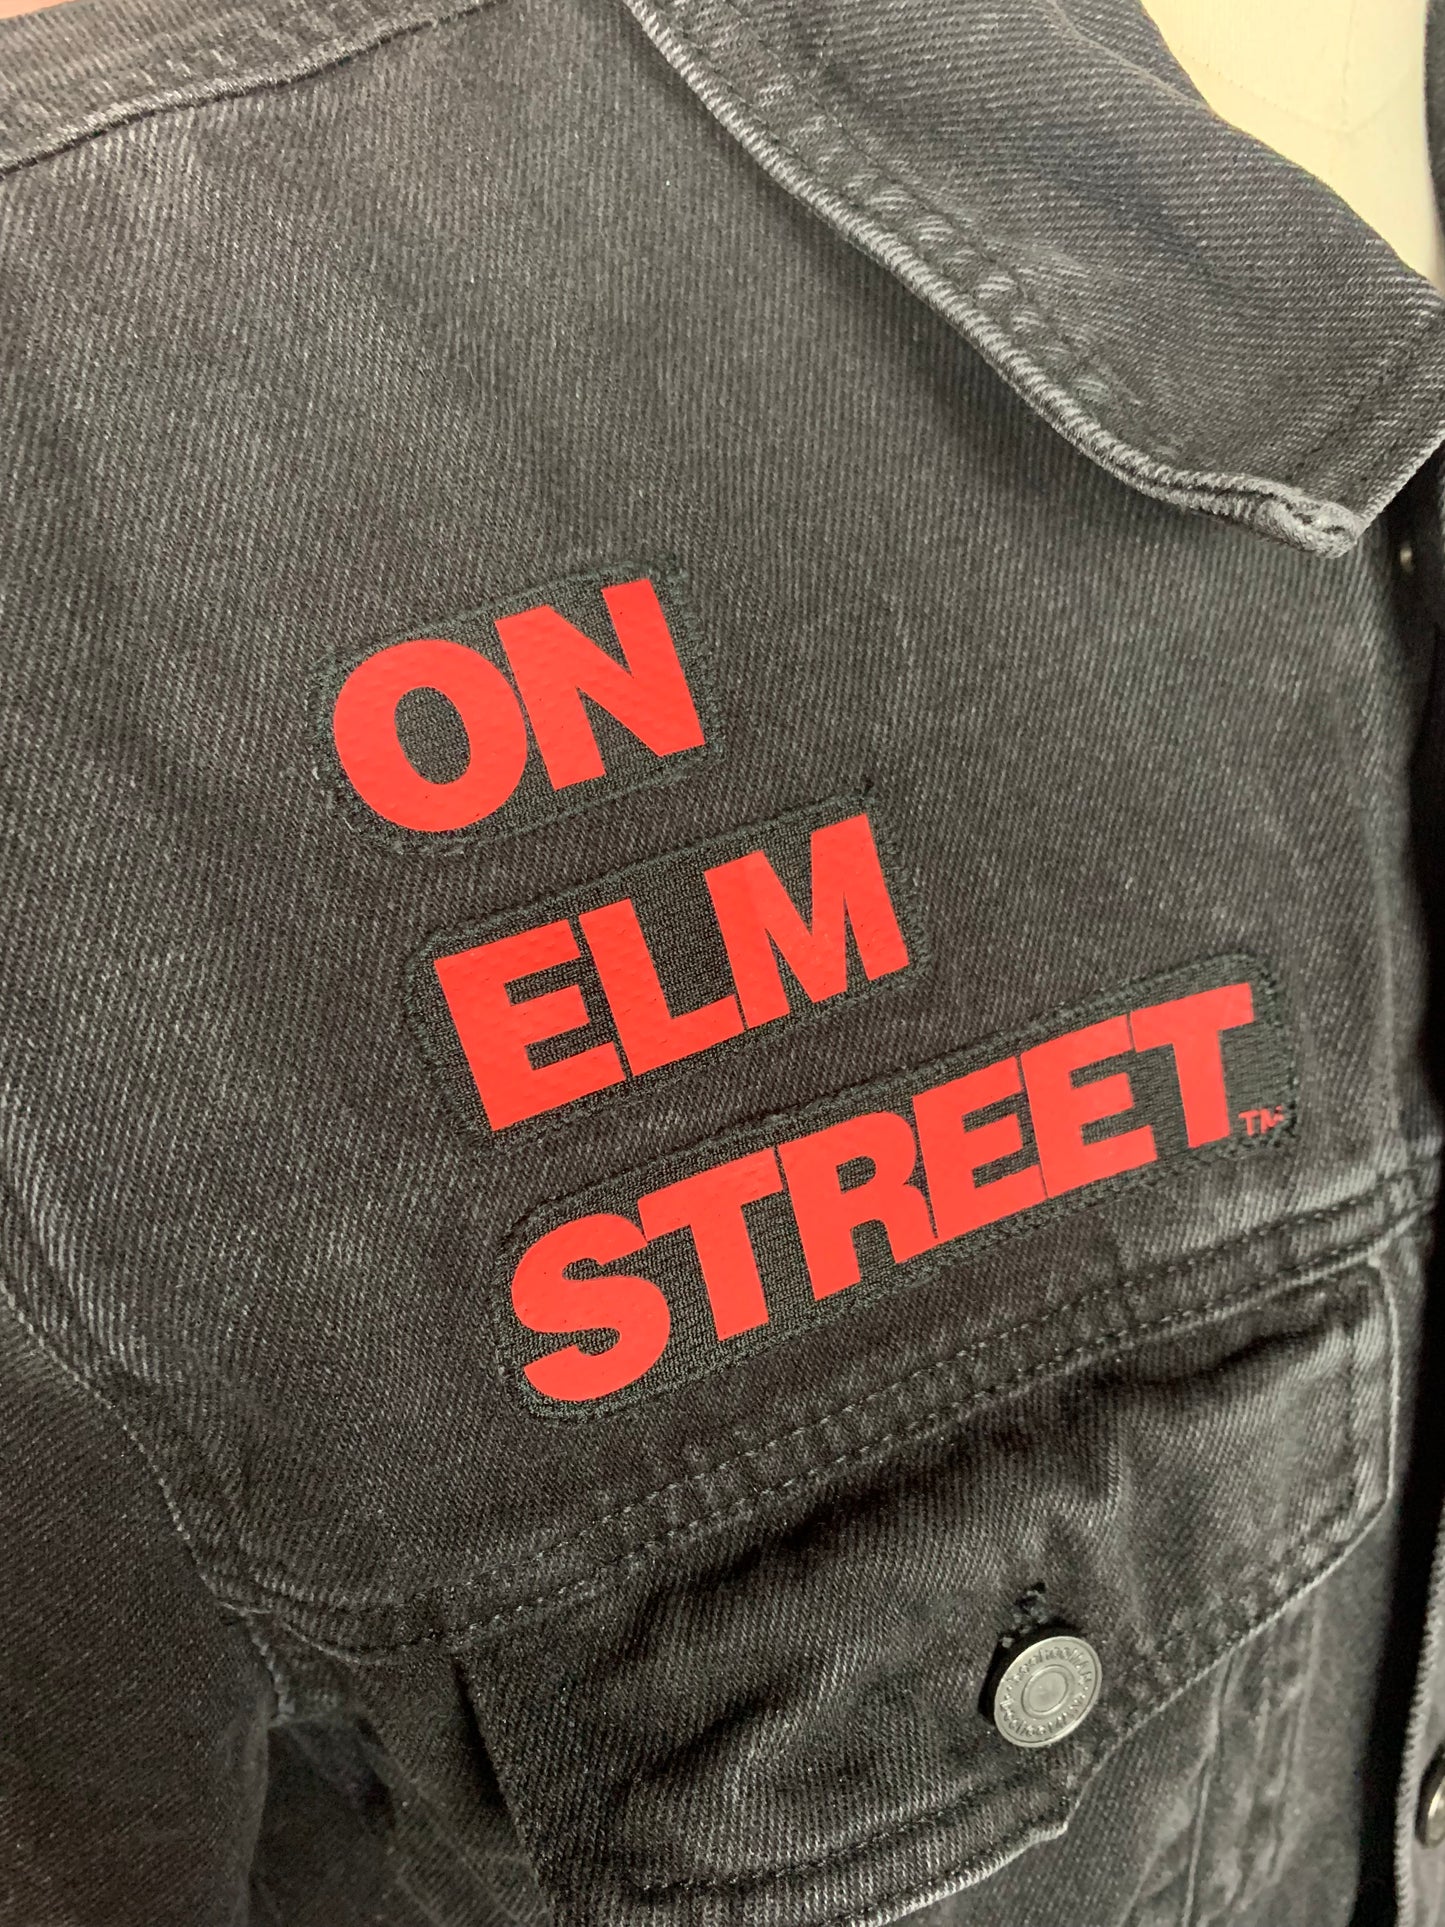 A Nightmare on Elm Street Jean Jacket Custom Rework L